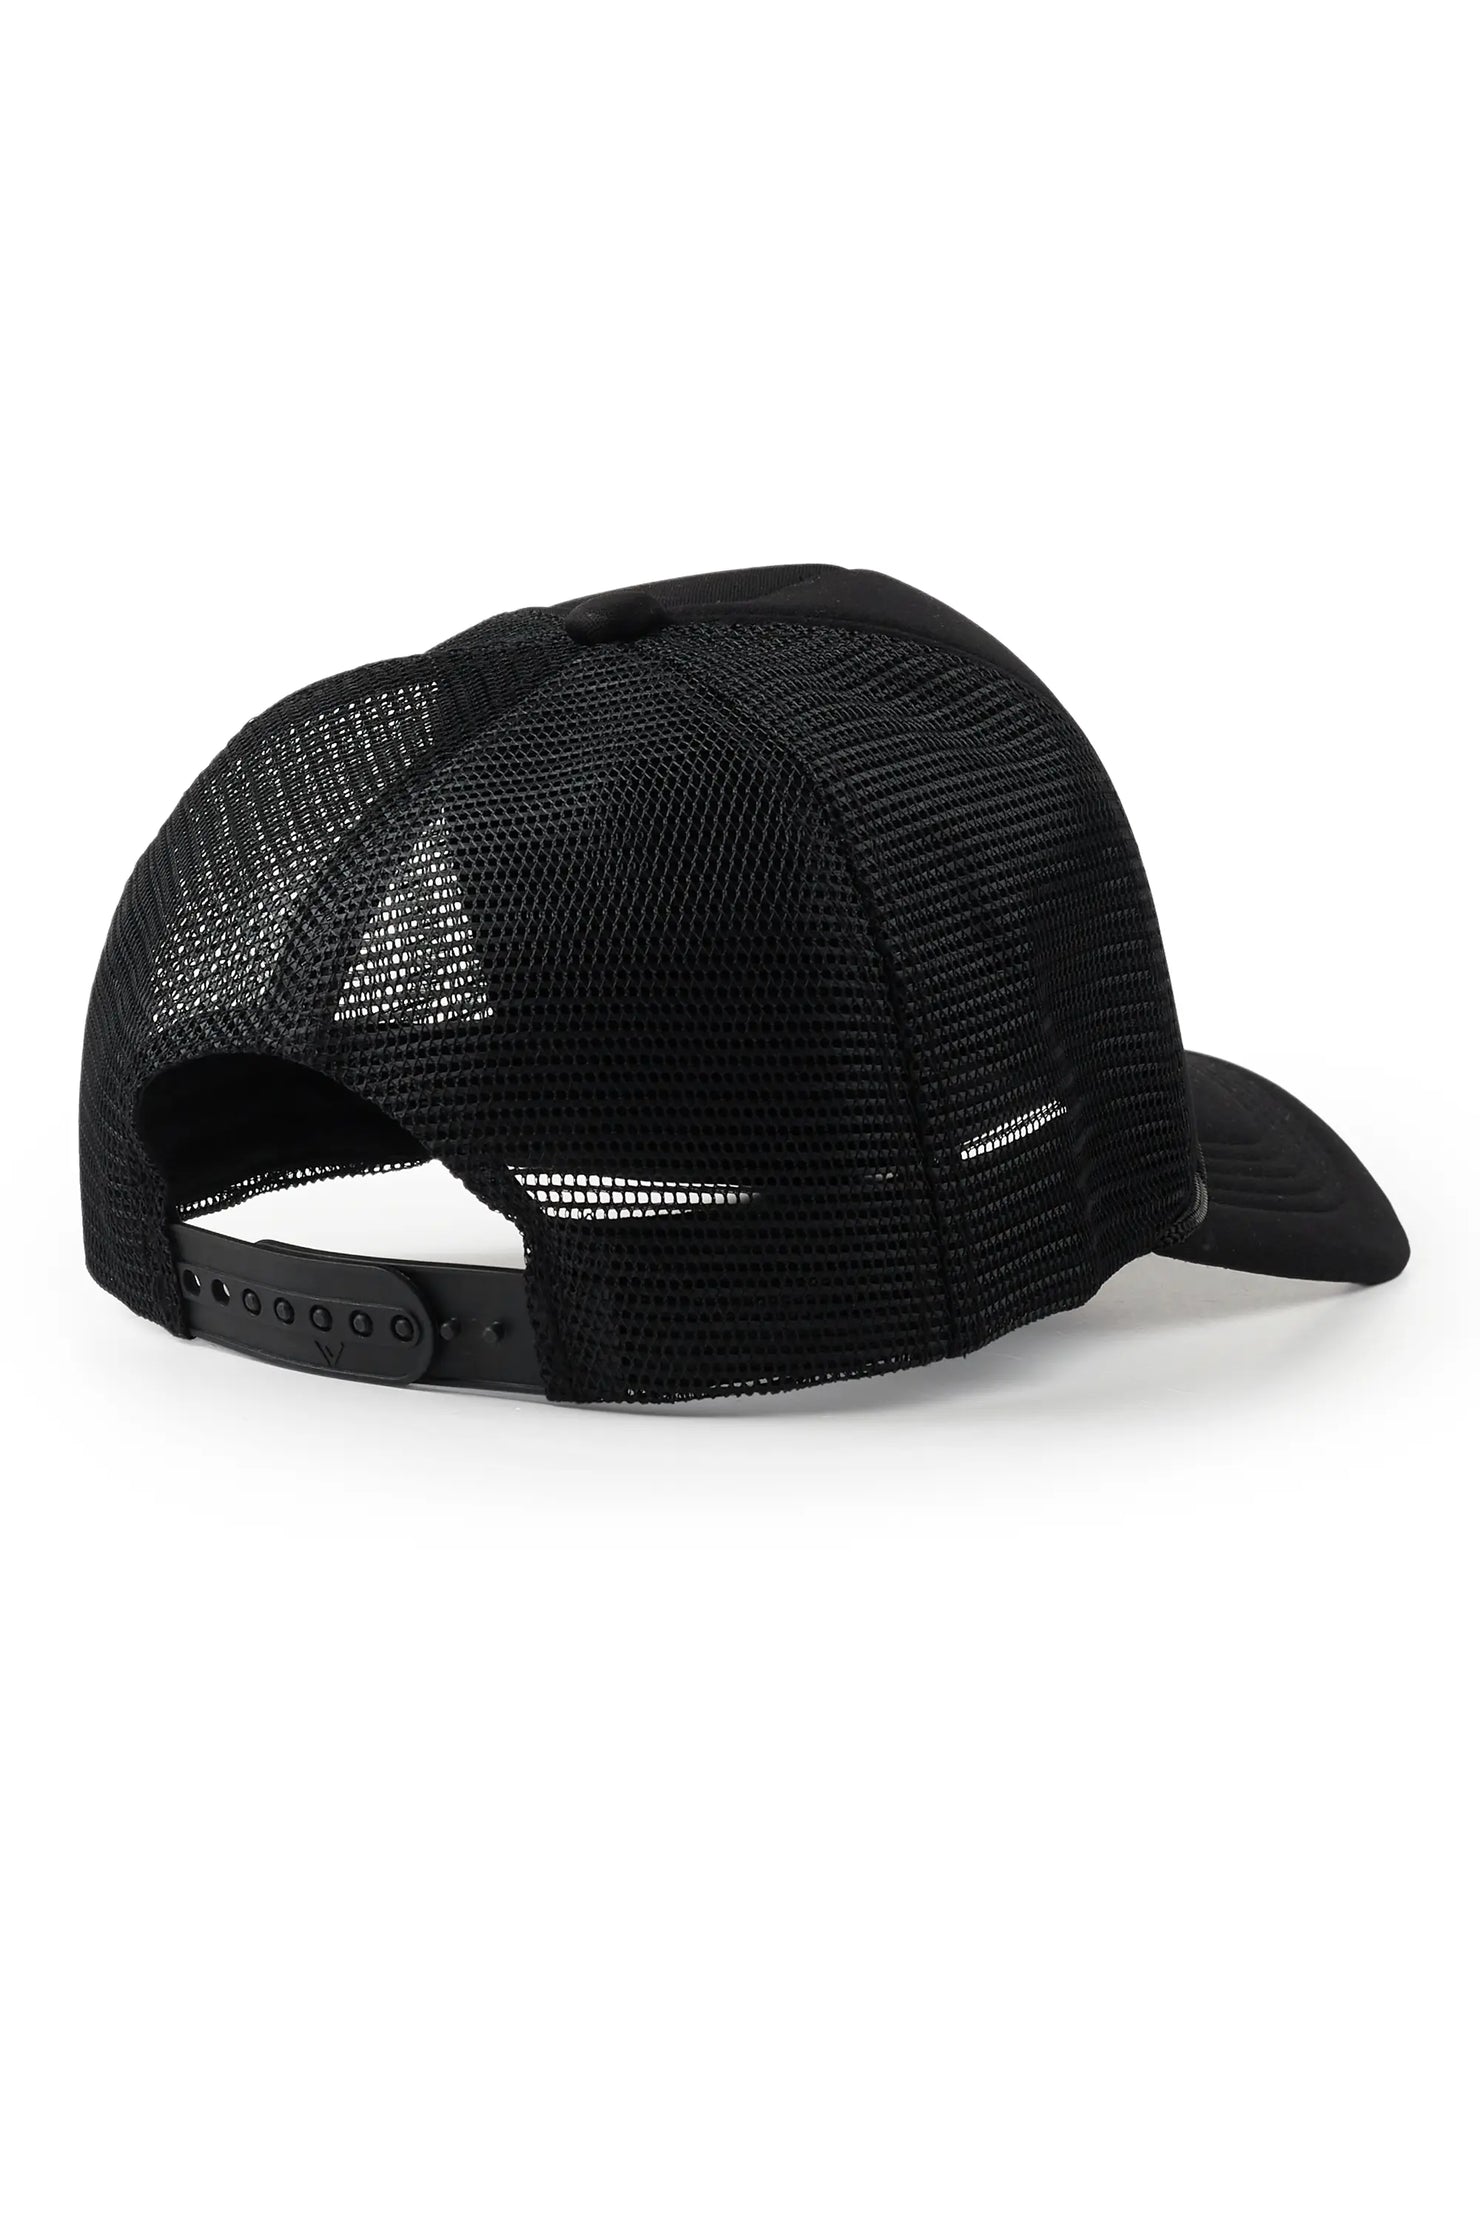 Callen Black Graphic Trucker Hat